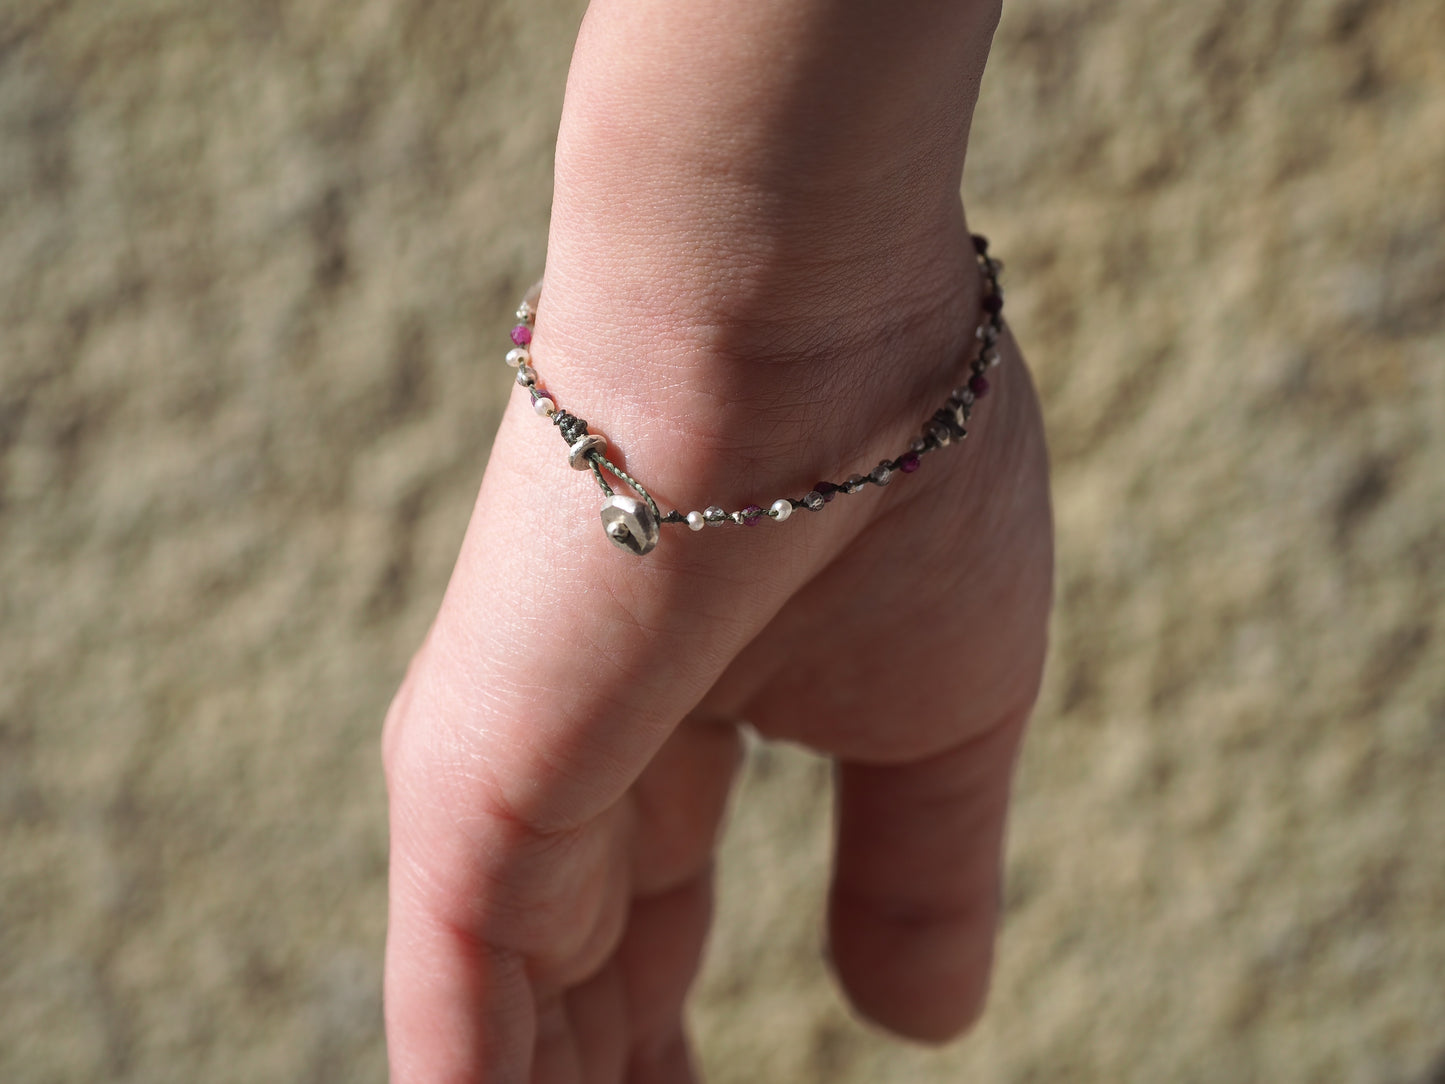 Braid bracelet "Ruby mix"